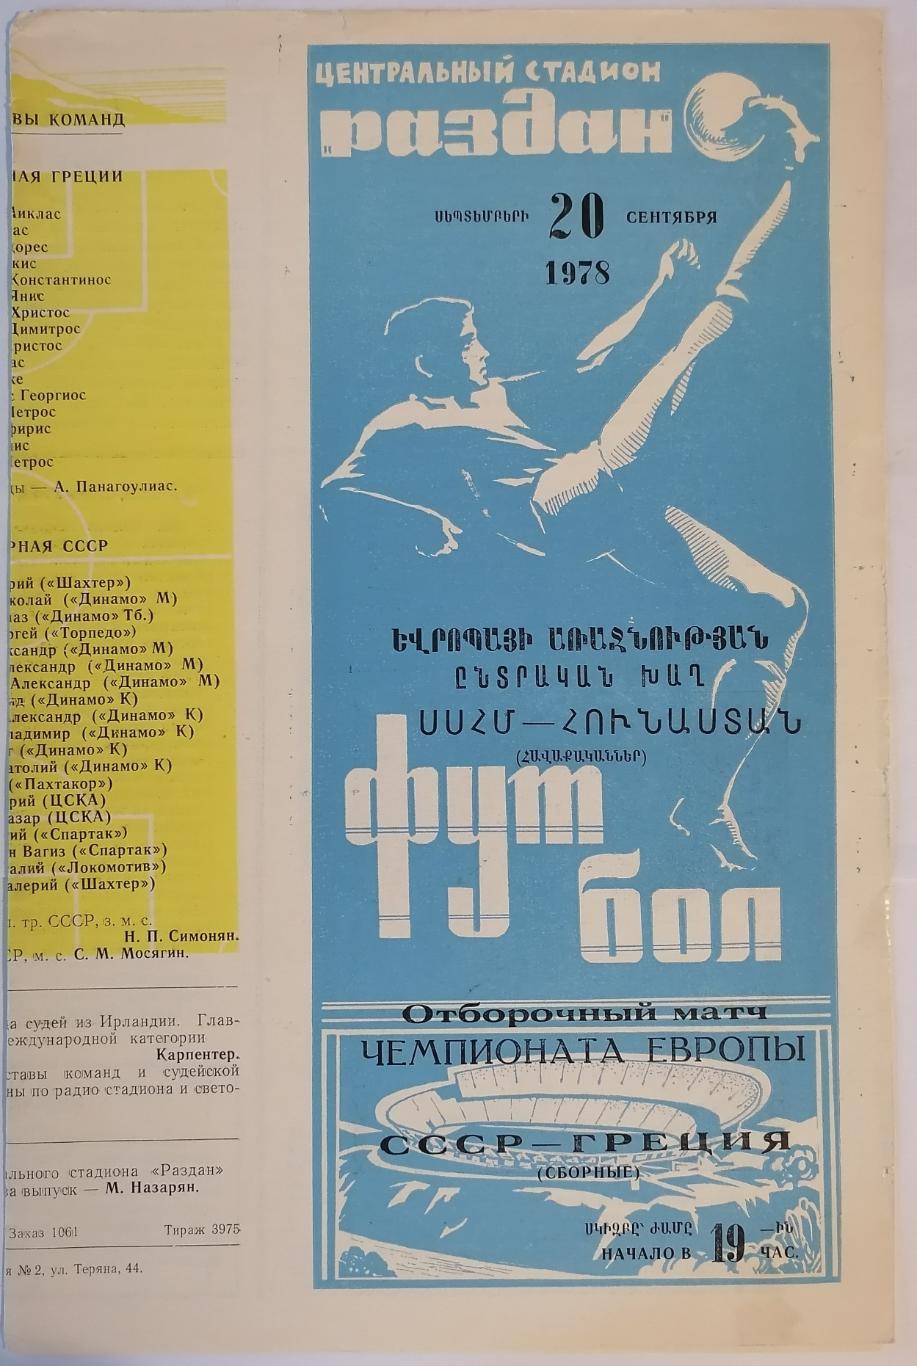 Сборная СССР - ГРЕЦИЯ 1978 официальная программа матч в ЕРЕВАНЕ